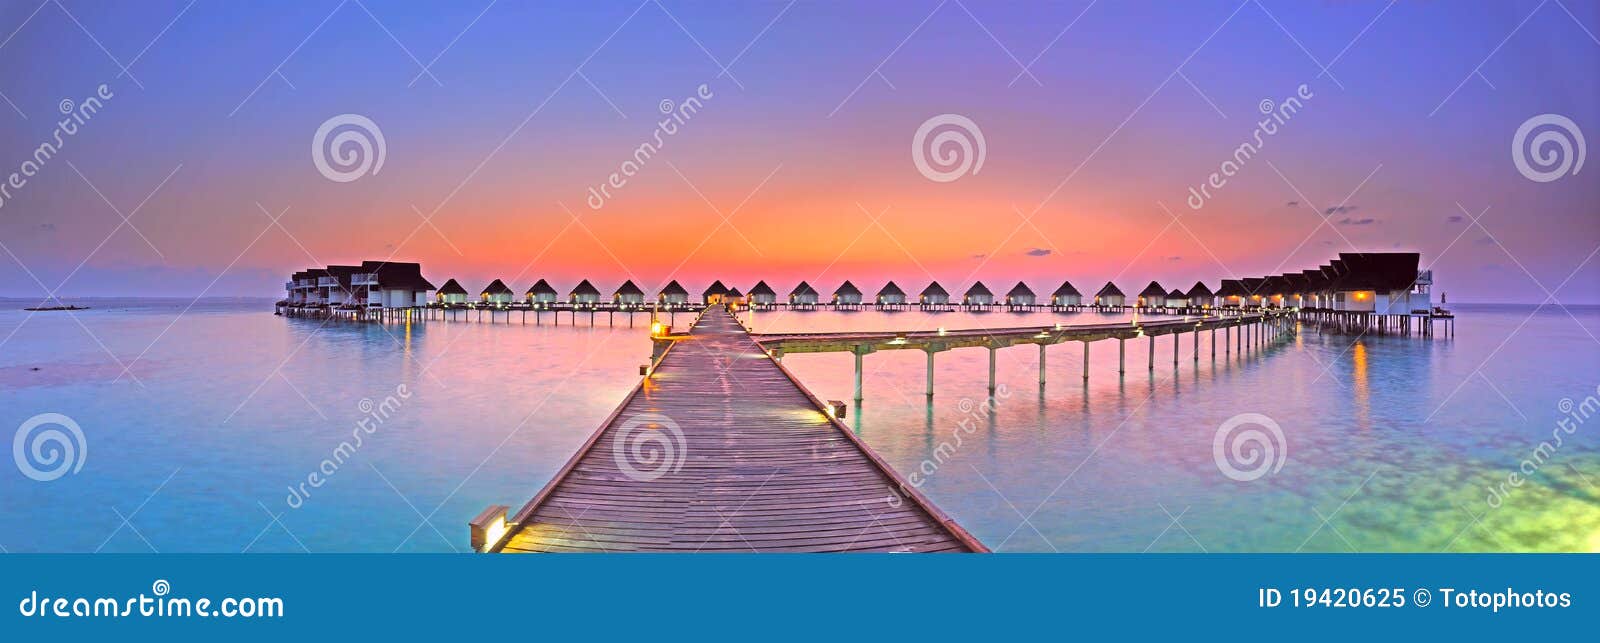 maldives island sunset panorama